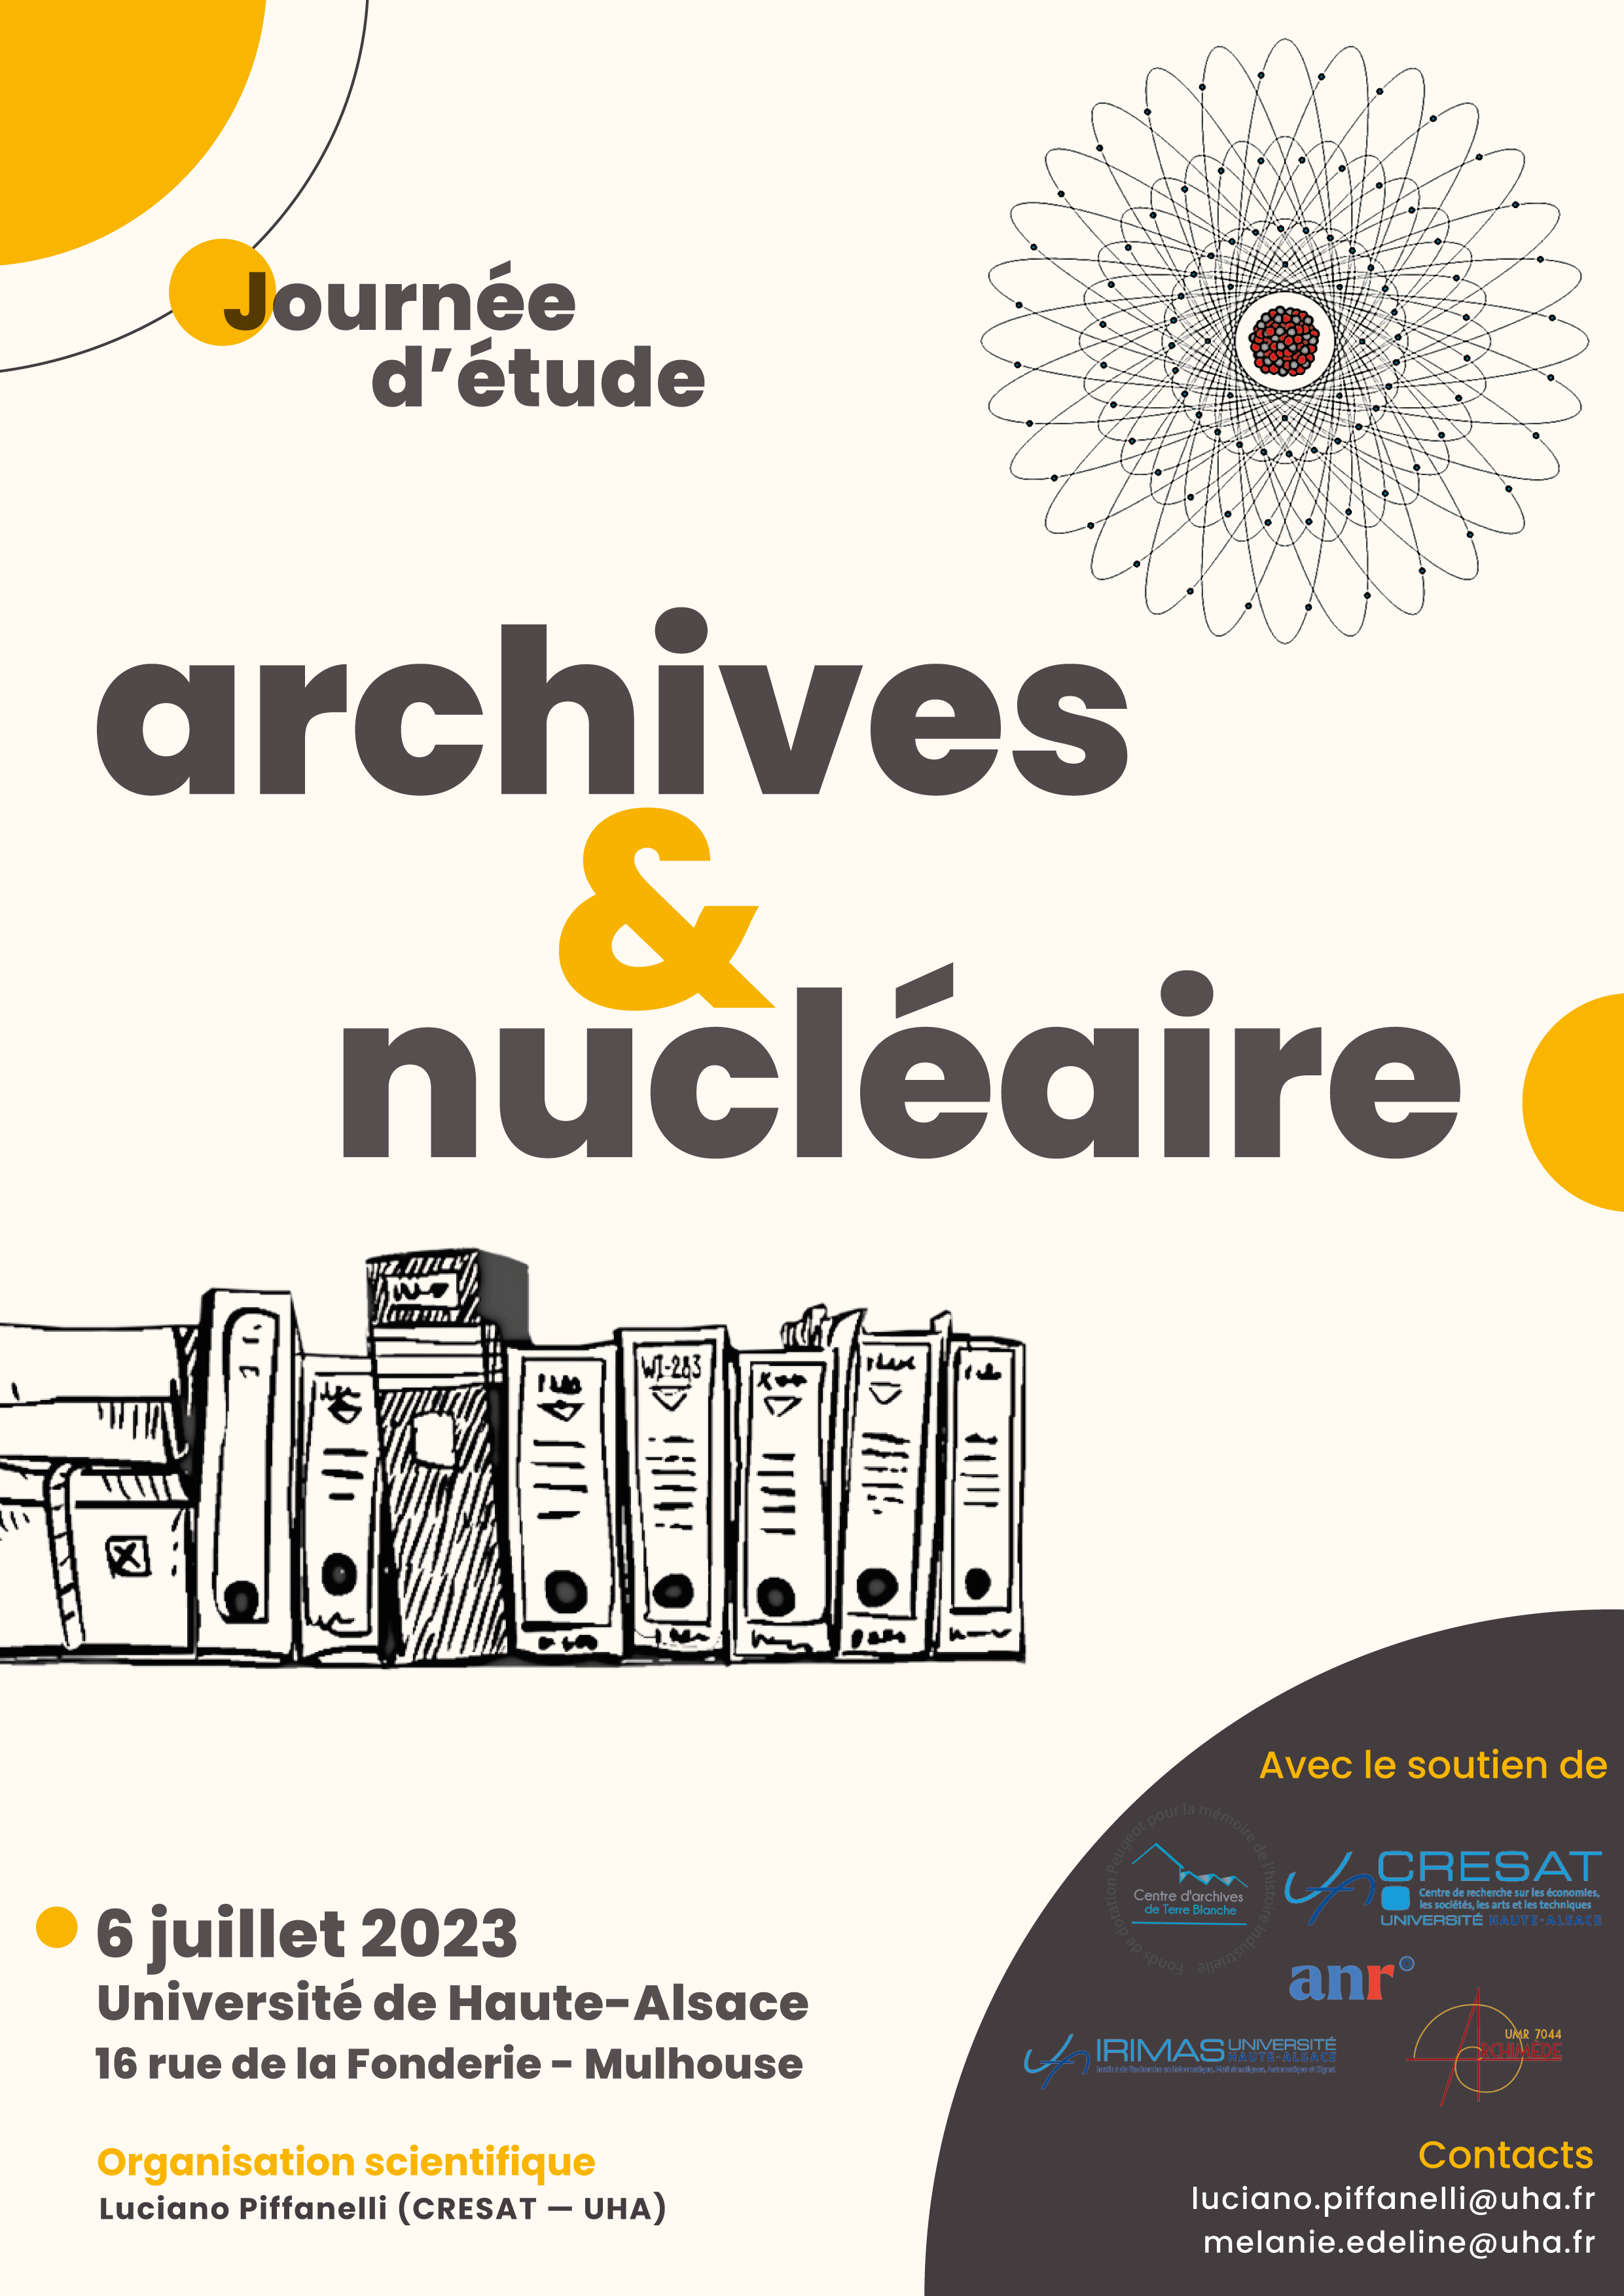 Archives & nucléaire